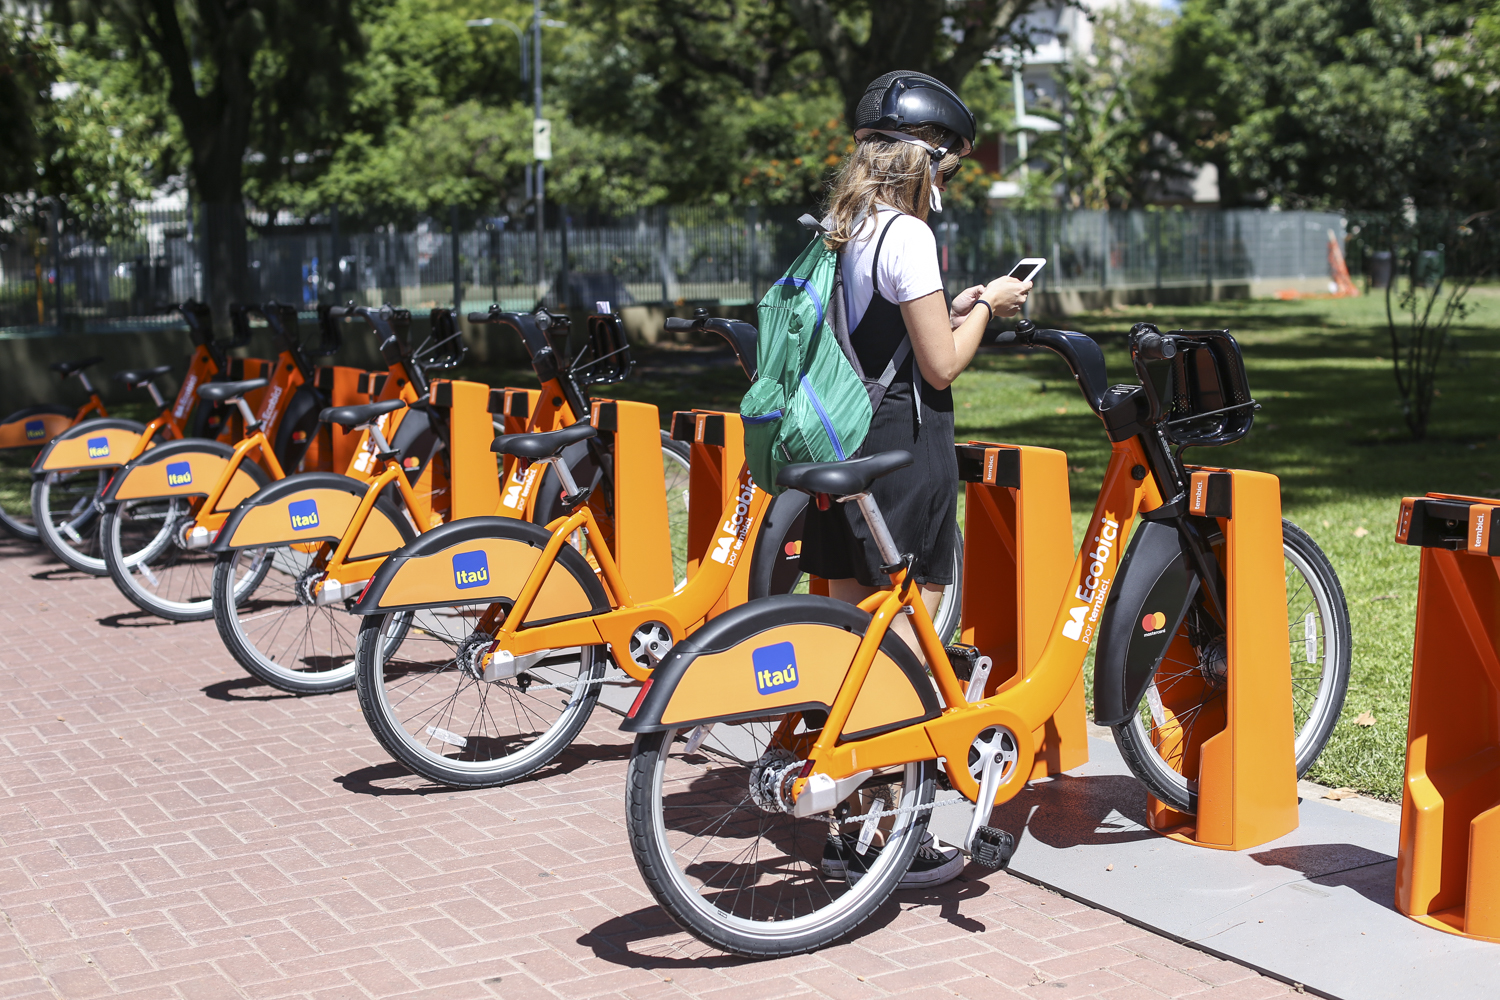 <p>Até o final de 2019, 4 mil bicicletas compartilhadas devem estar disponíveis gratuitamente em Buenos Aires</p>